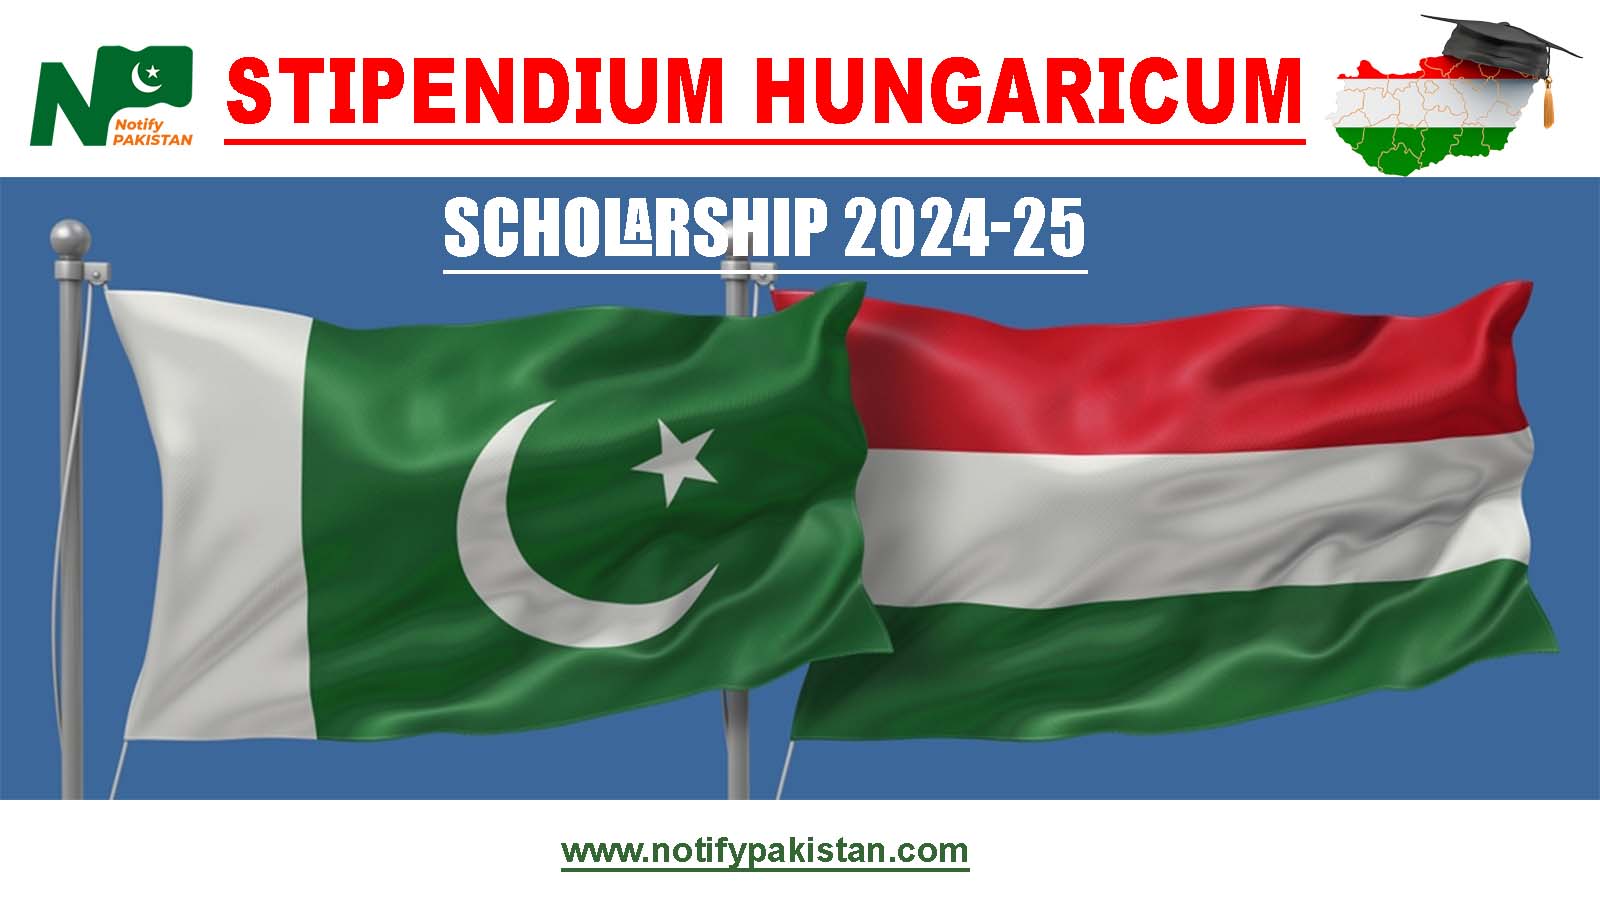 Stipendium Hungaricum Scholarship 2024-25